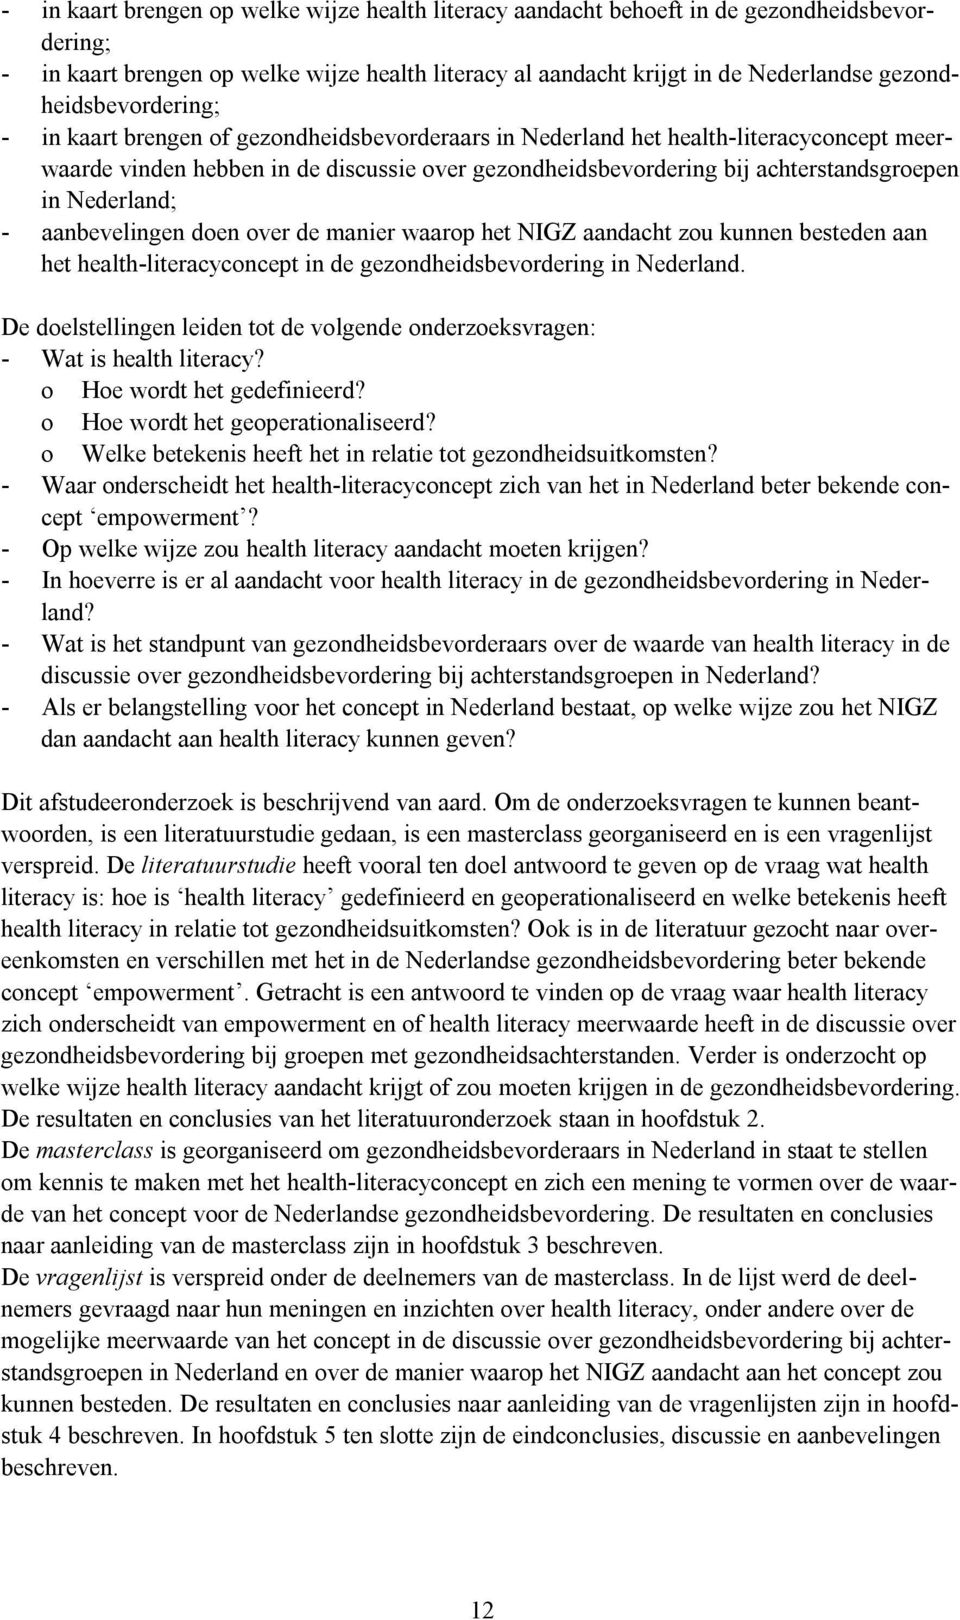 achterstandsgroepen in Nederland; - aanbevelingen doen over de manier waarop het NIGZ aandacht zou kunnen besteden aan het health-literacyconcept in de gezondheidsbevordering in Nederland.